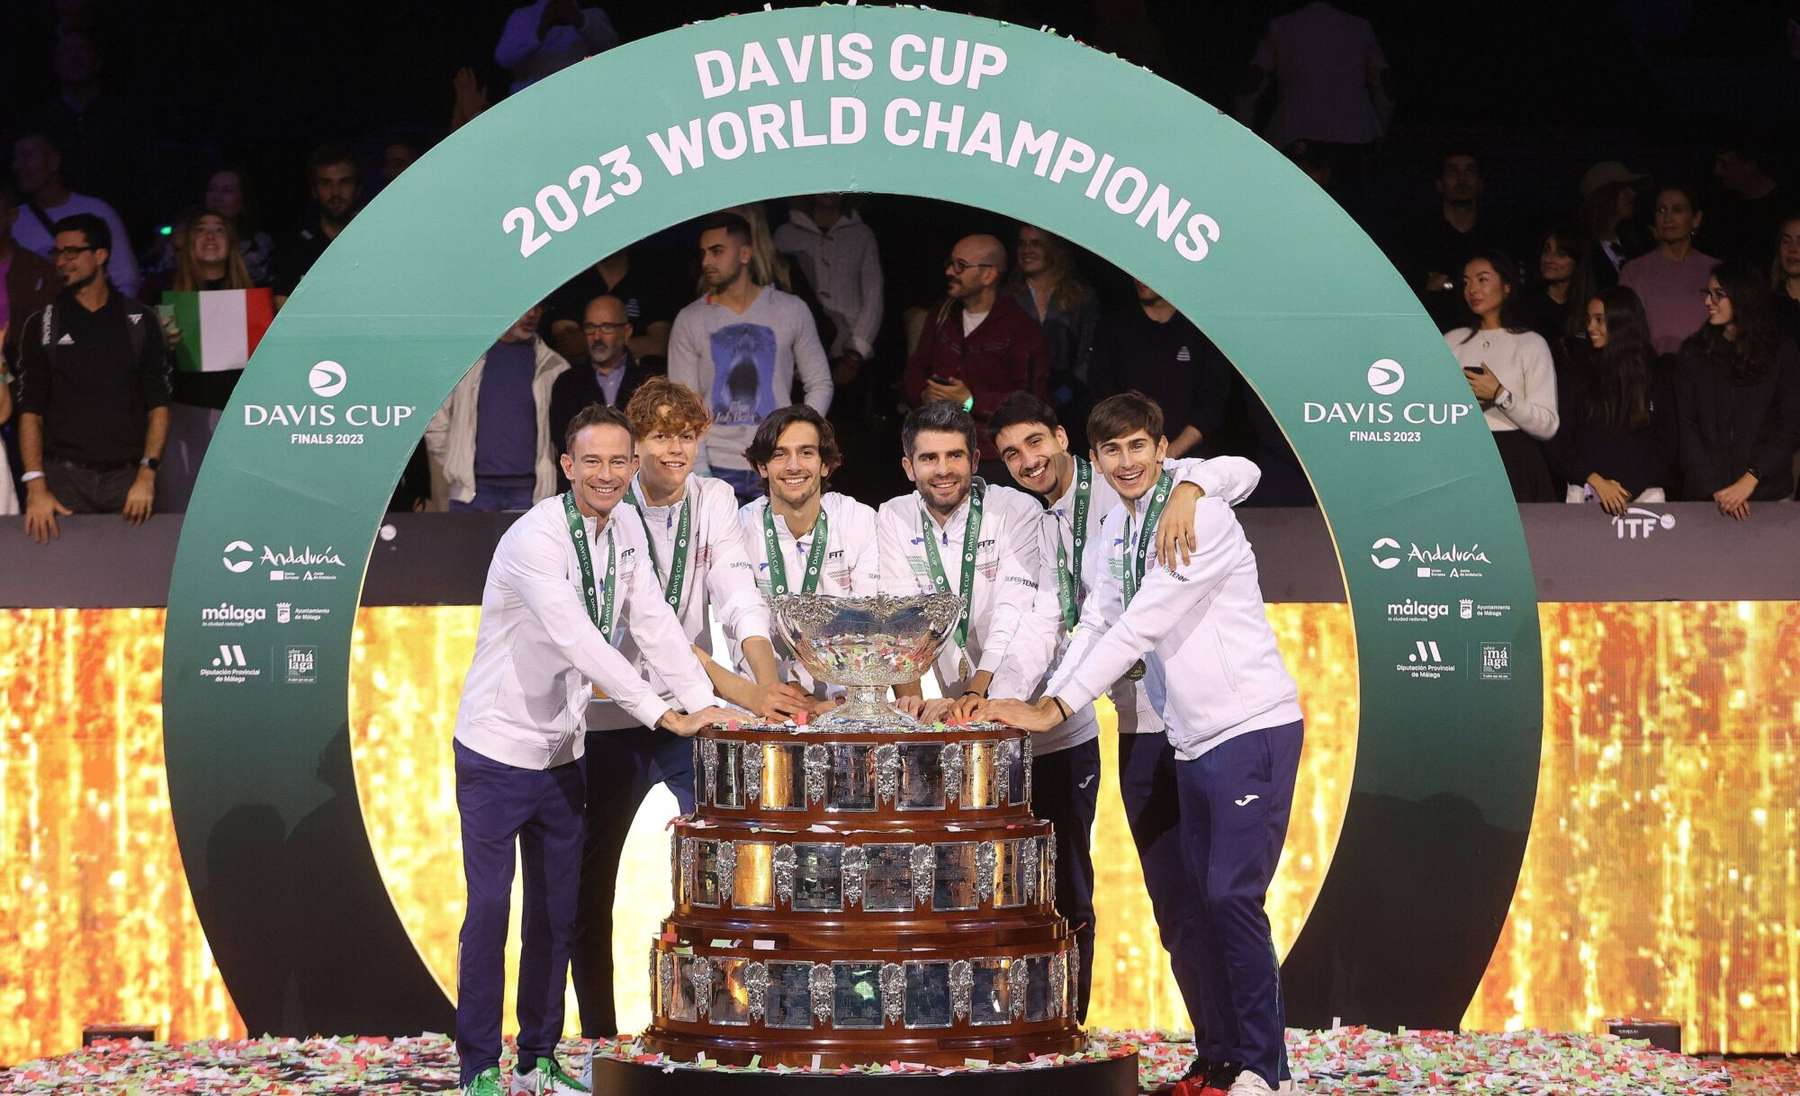 Itaalia koondis Davis Cupil